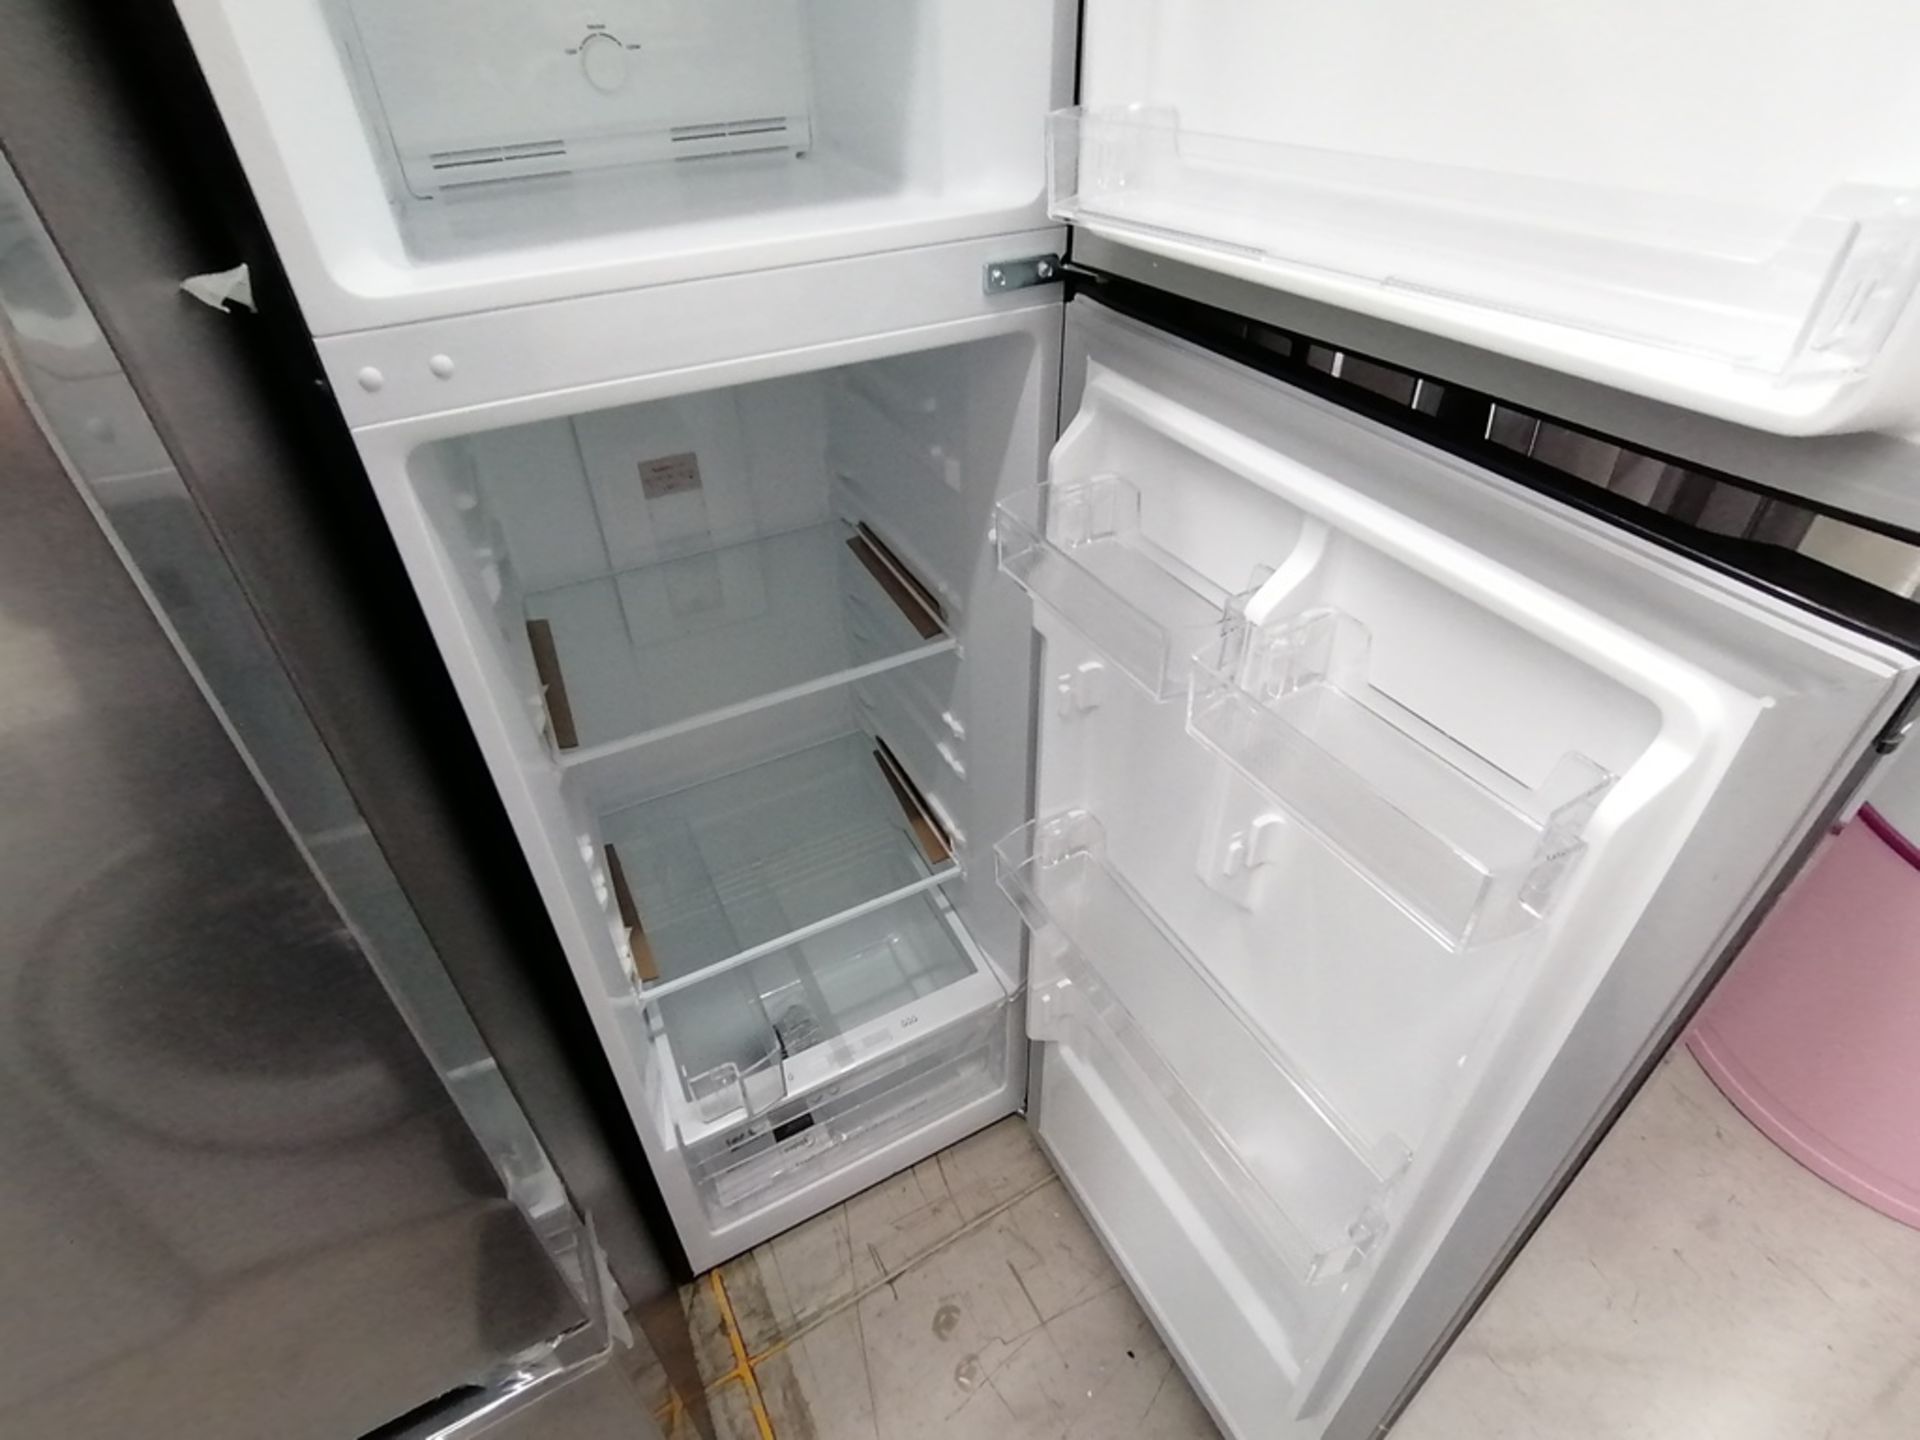 Lote de 2 refrigeradores incluye: 1 Refrigerador, Marca Midea, Modelo MRTN09G2NCS, Serie 341B261870 - Image 12 of 15